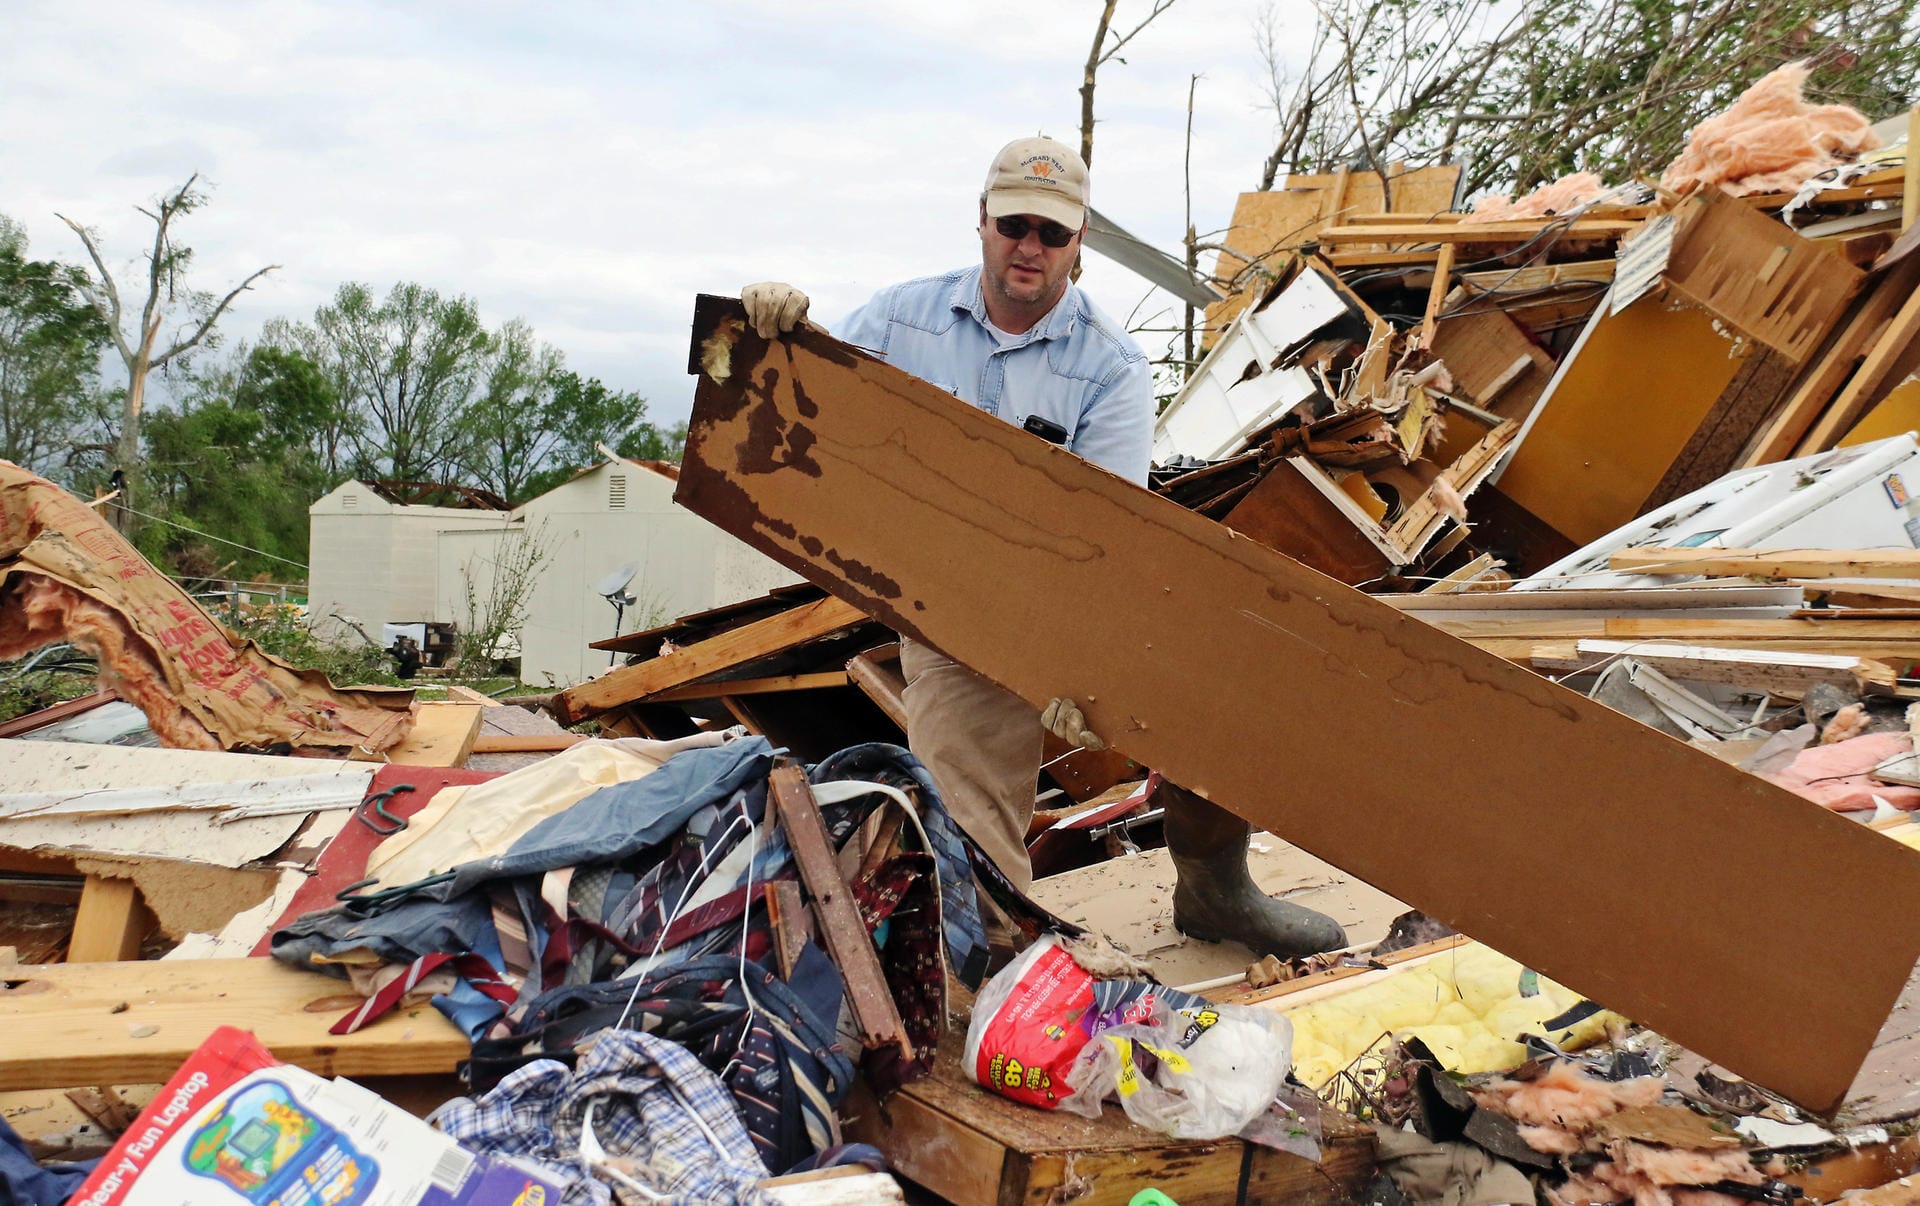 Ein Anwohner aus Hamilton hilft bei Bergungsarbeiten mit: Roman Brown räumt Teile eines zerstörten Hauses zur Seite, während er für einen Freund nach Medizin sucht.